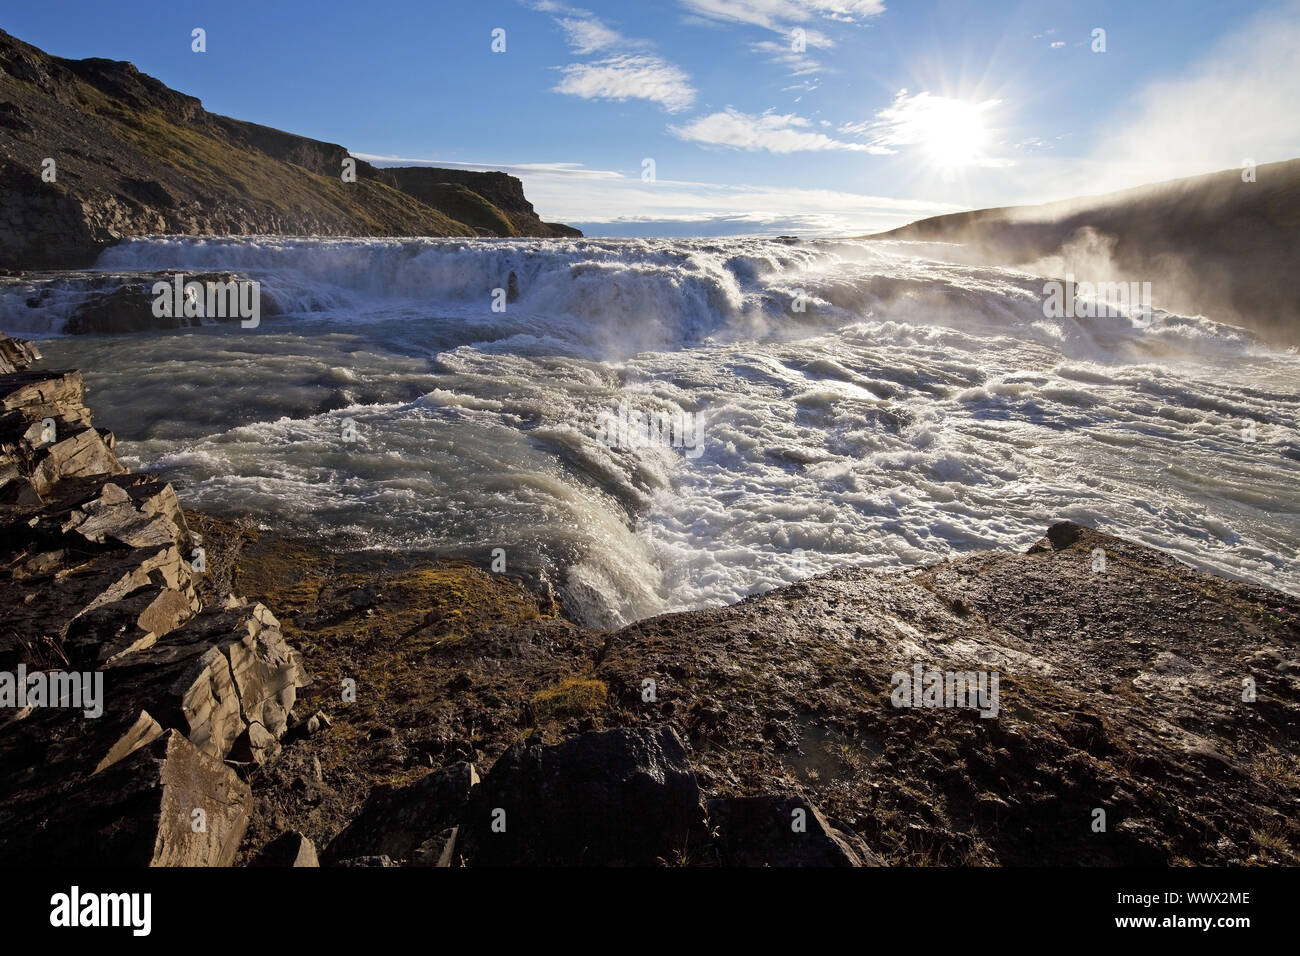 Cascade de Gullfoss, rivière Hvitá, cercle d'or, de Haukadalur, Islande, Europe Banque D'Images